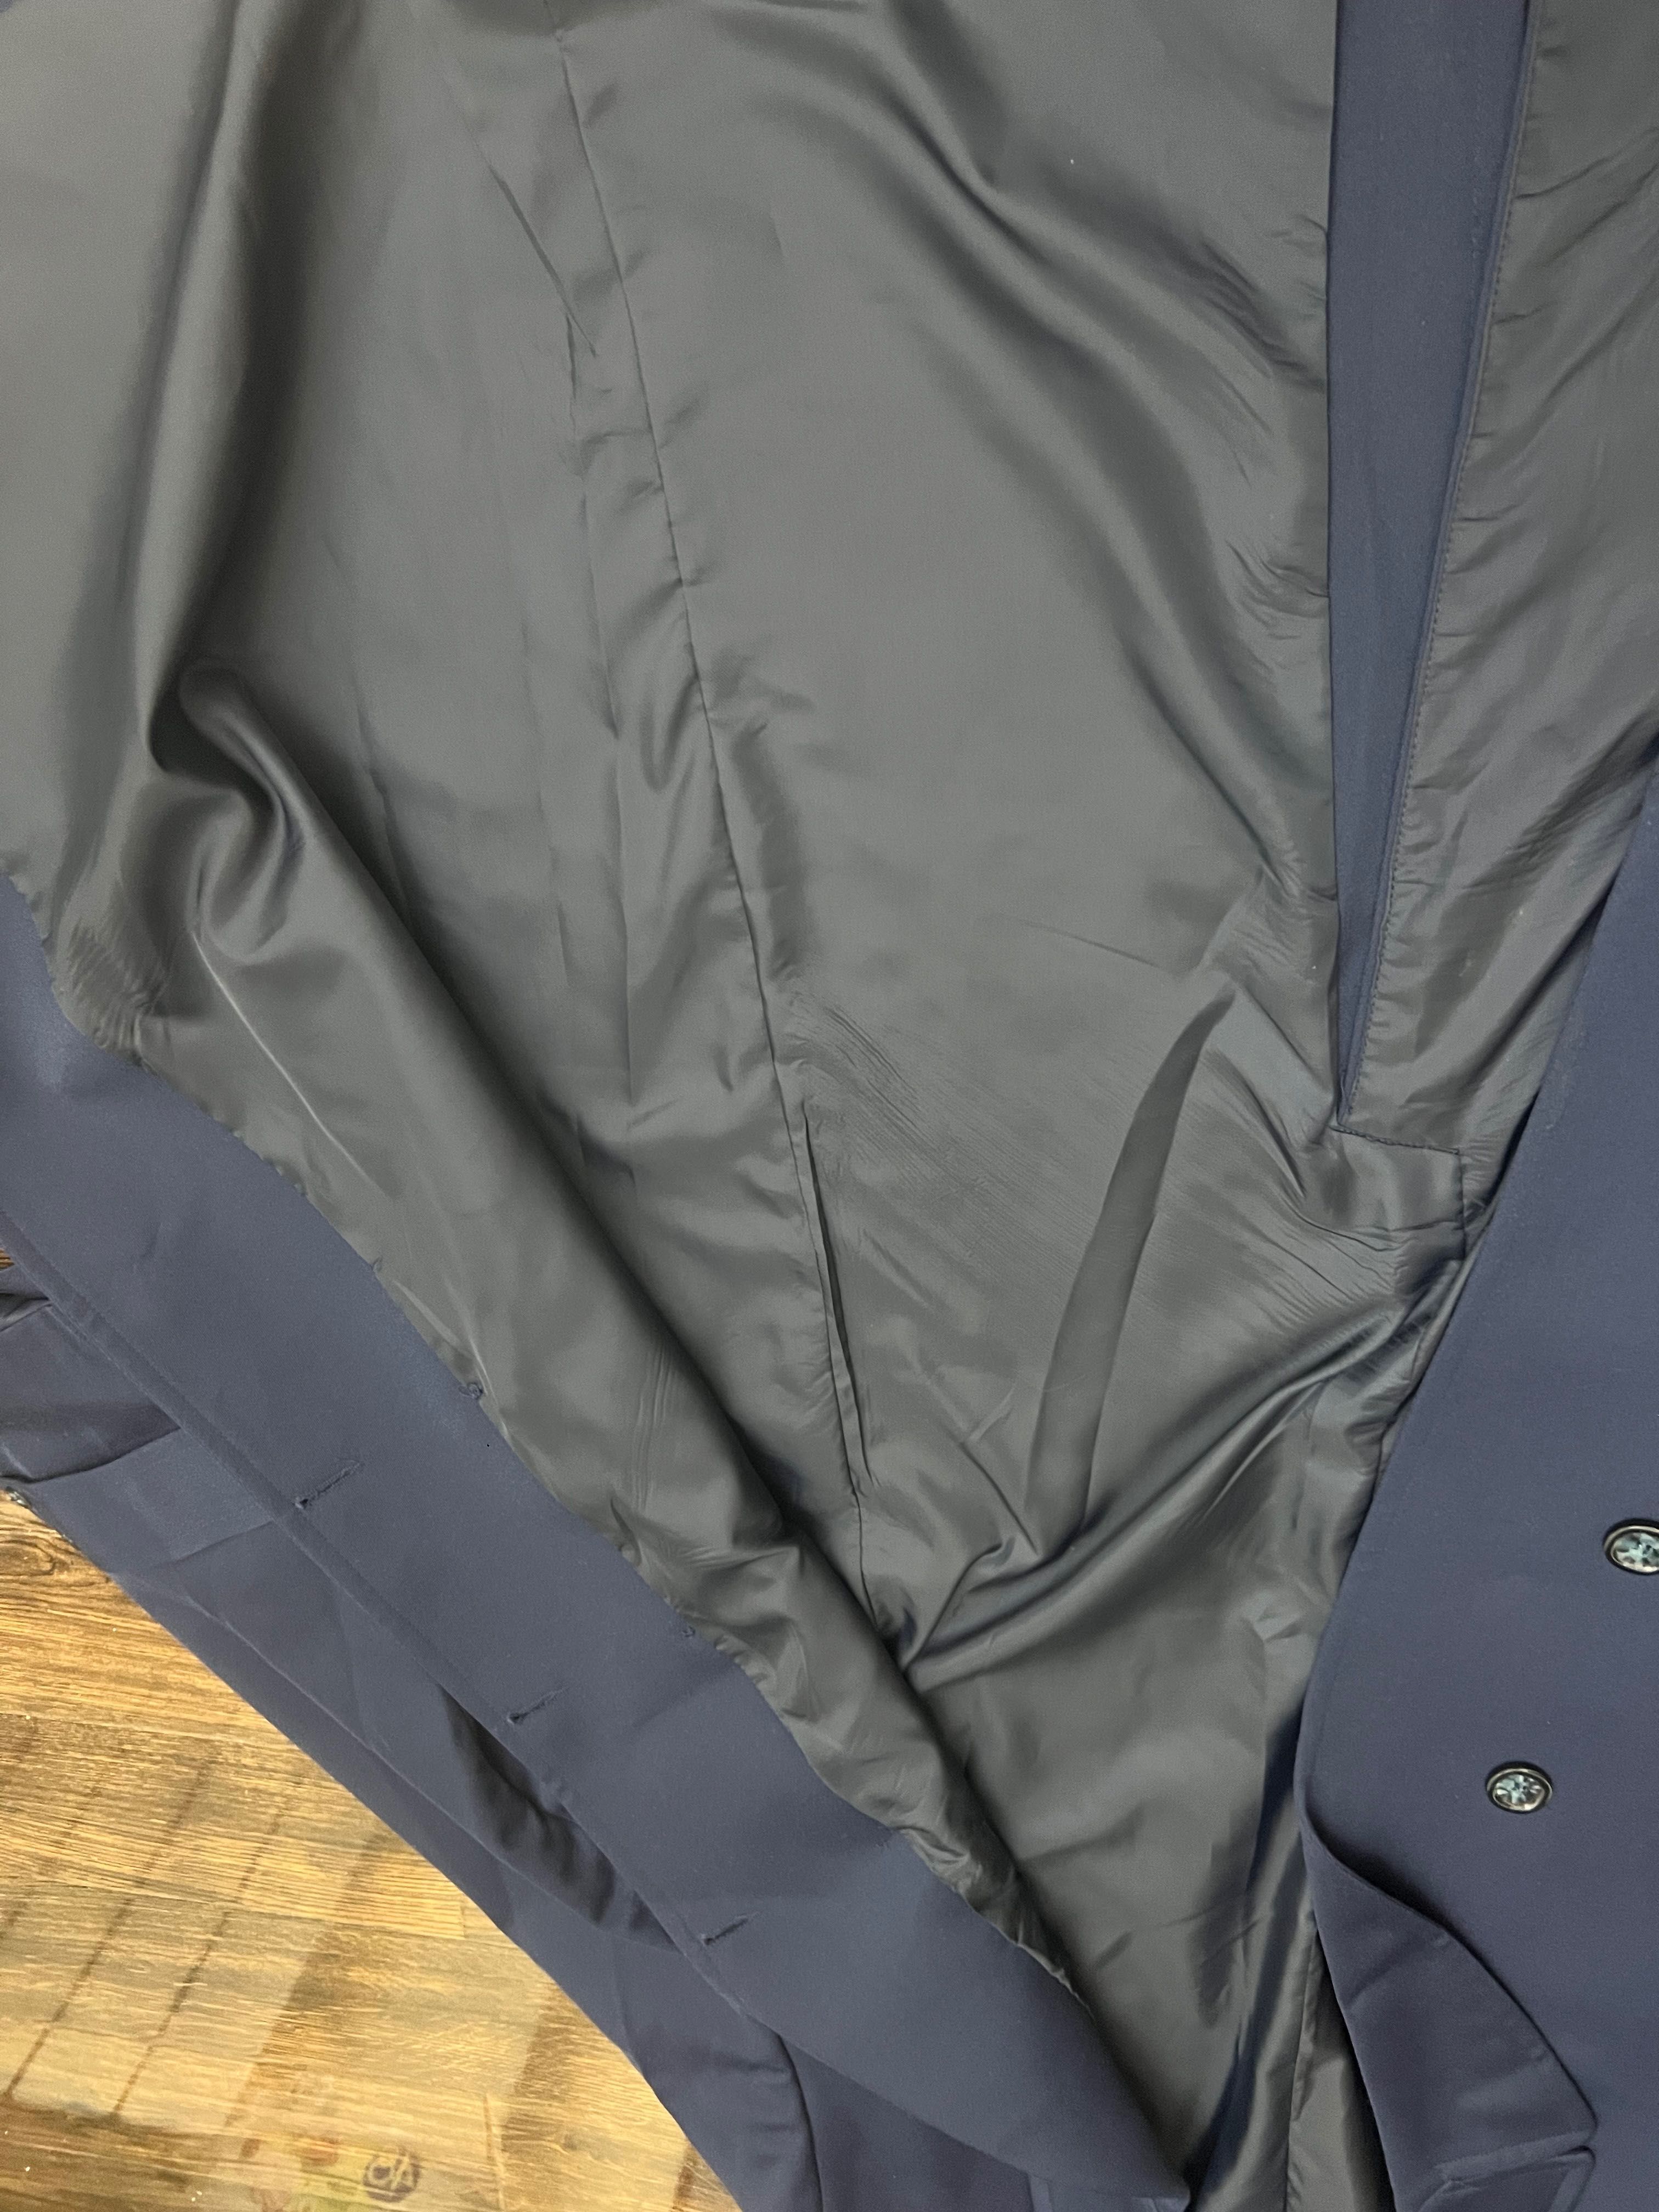 Мужское классическое пальто размер XL